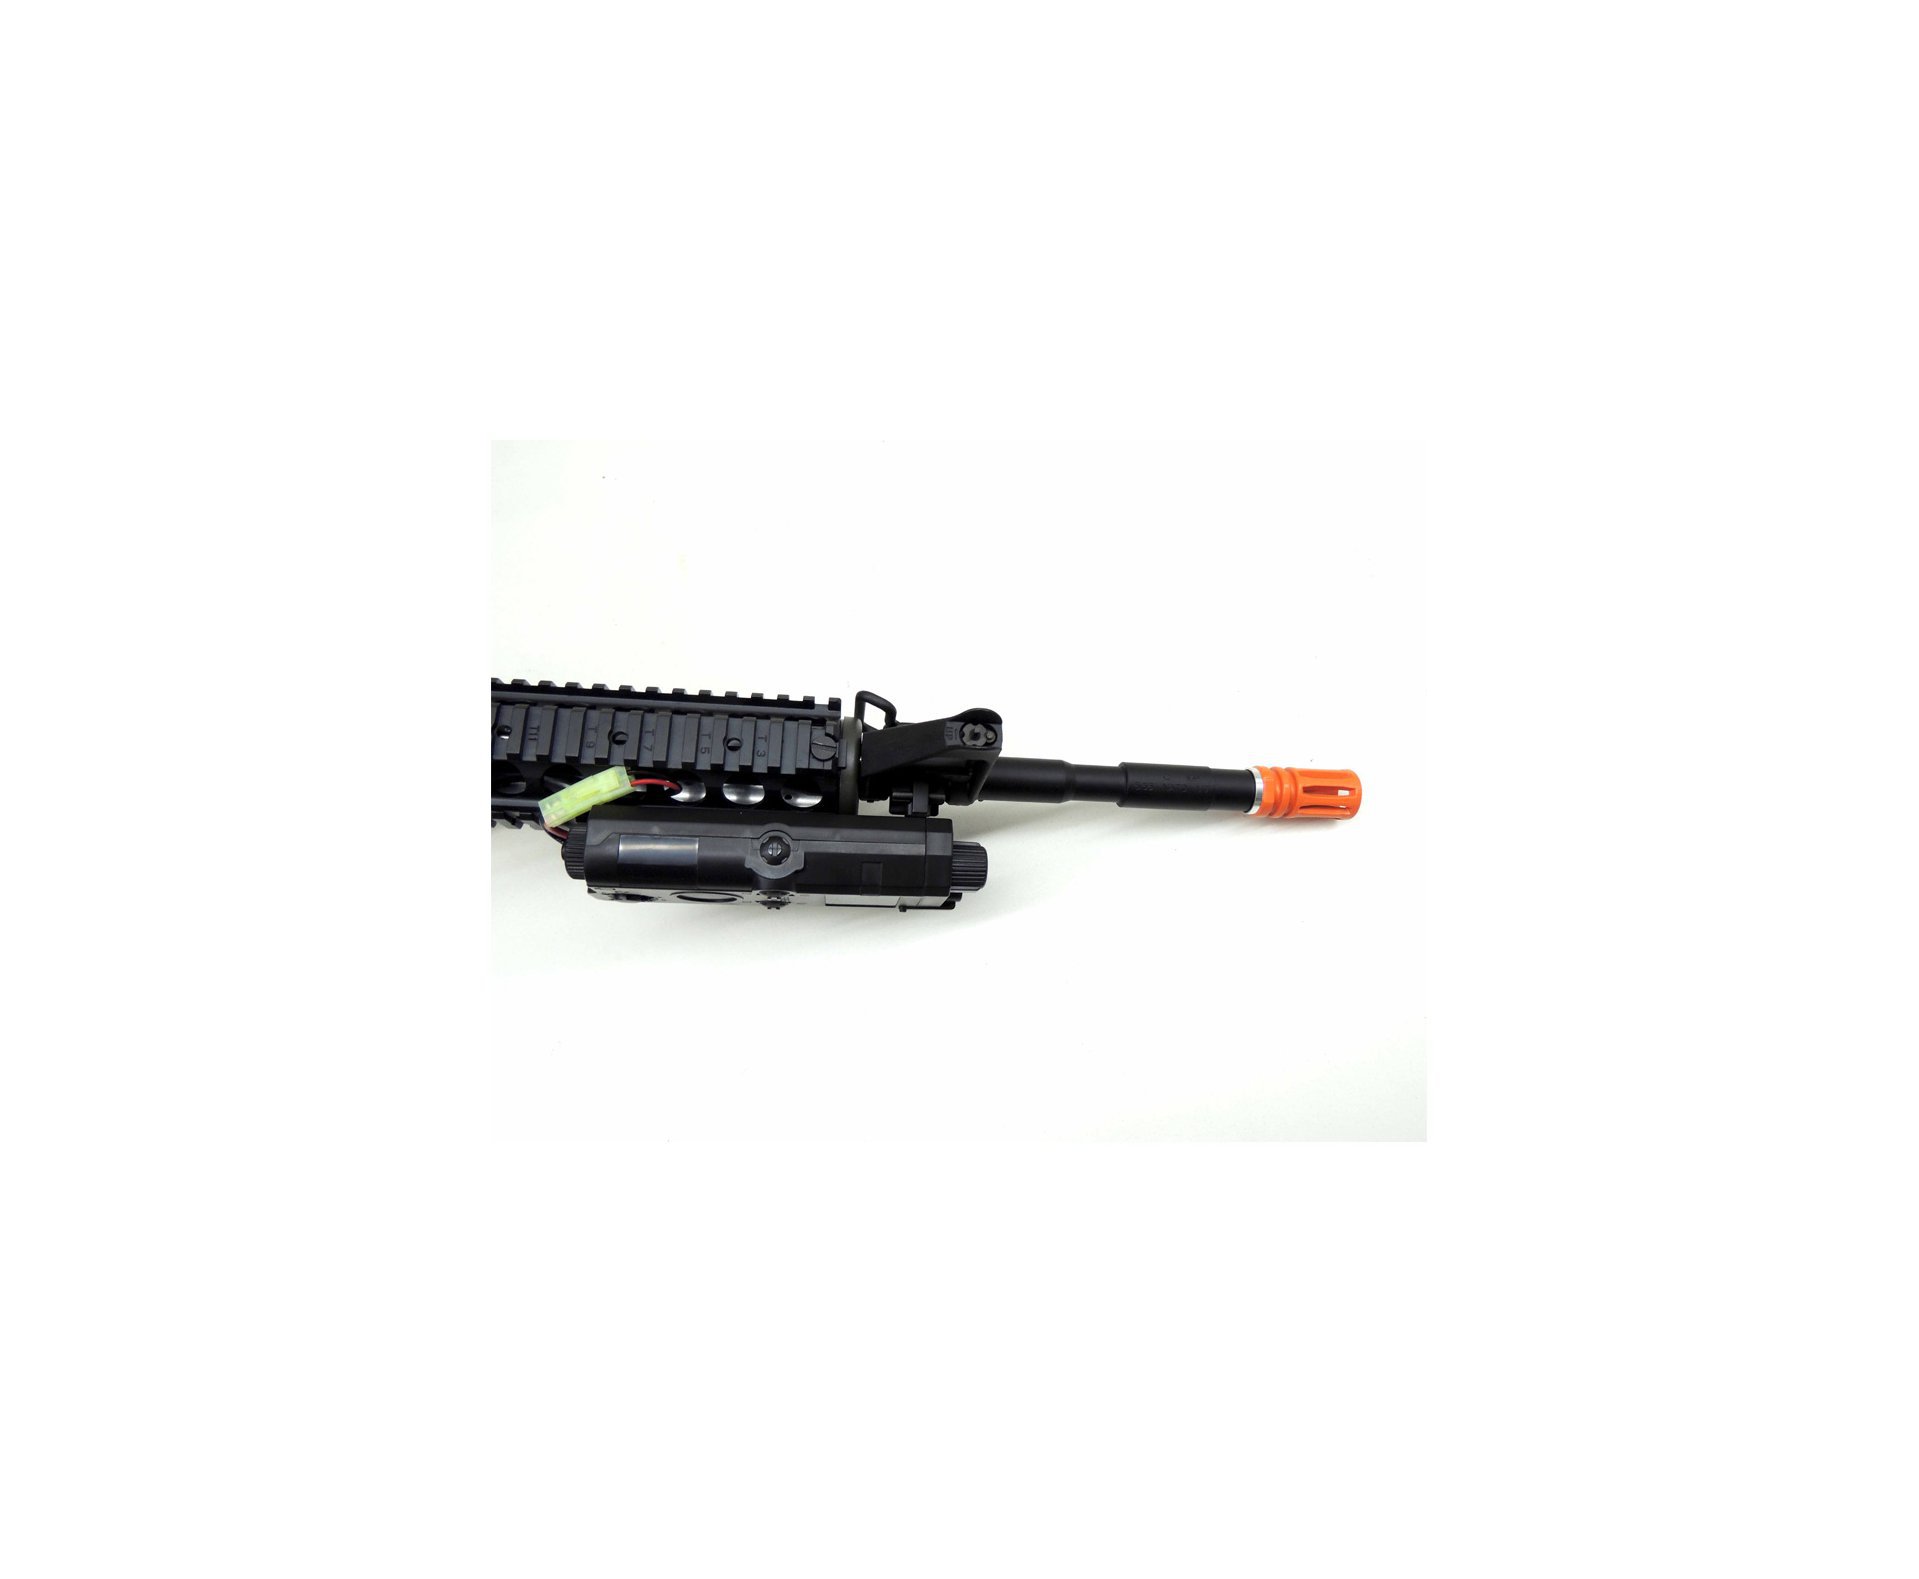 Rifle De Airsoft Colt M4a1ris Cal 6,0 Mm - King Arms + Farda Acu Digital Urban Swiss+arms - Tamanho M